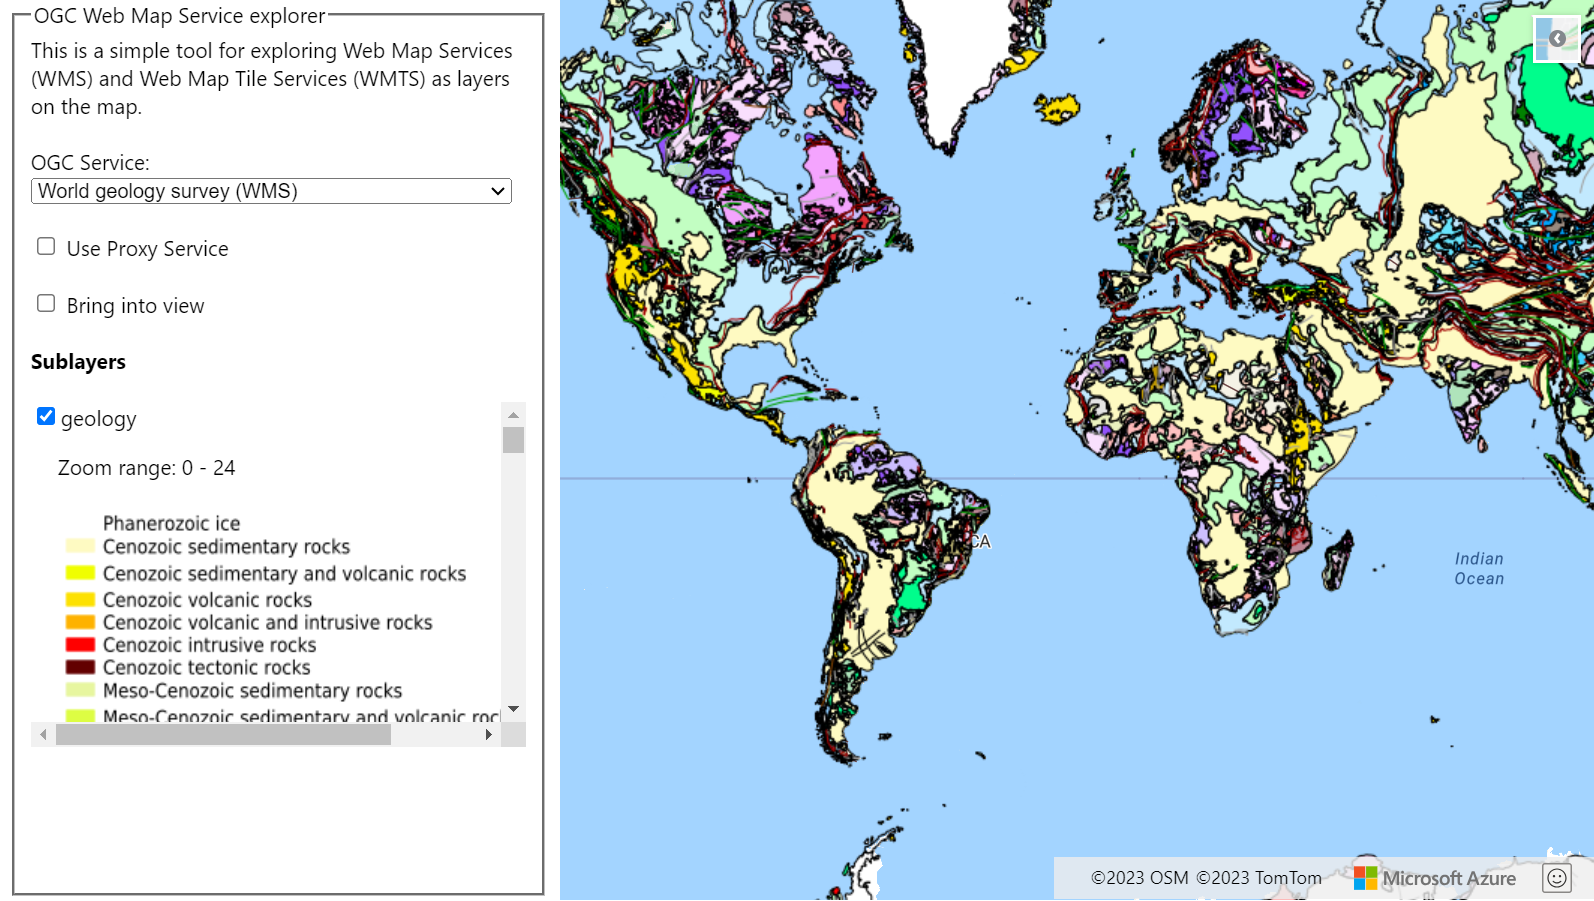 world geology survey の WMTS レイヤーを含むマップを示すスクリーンショット。マップの左には、選択できる OGC サービスを示すドロップダウン リストがある。